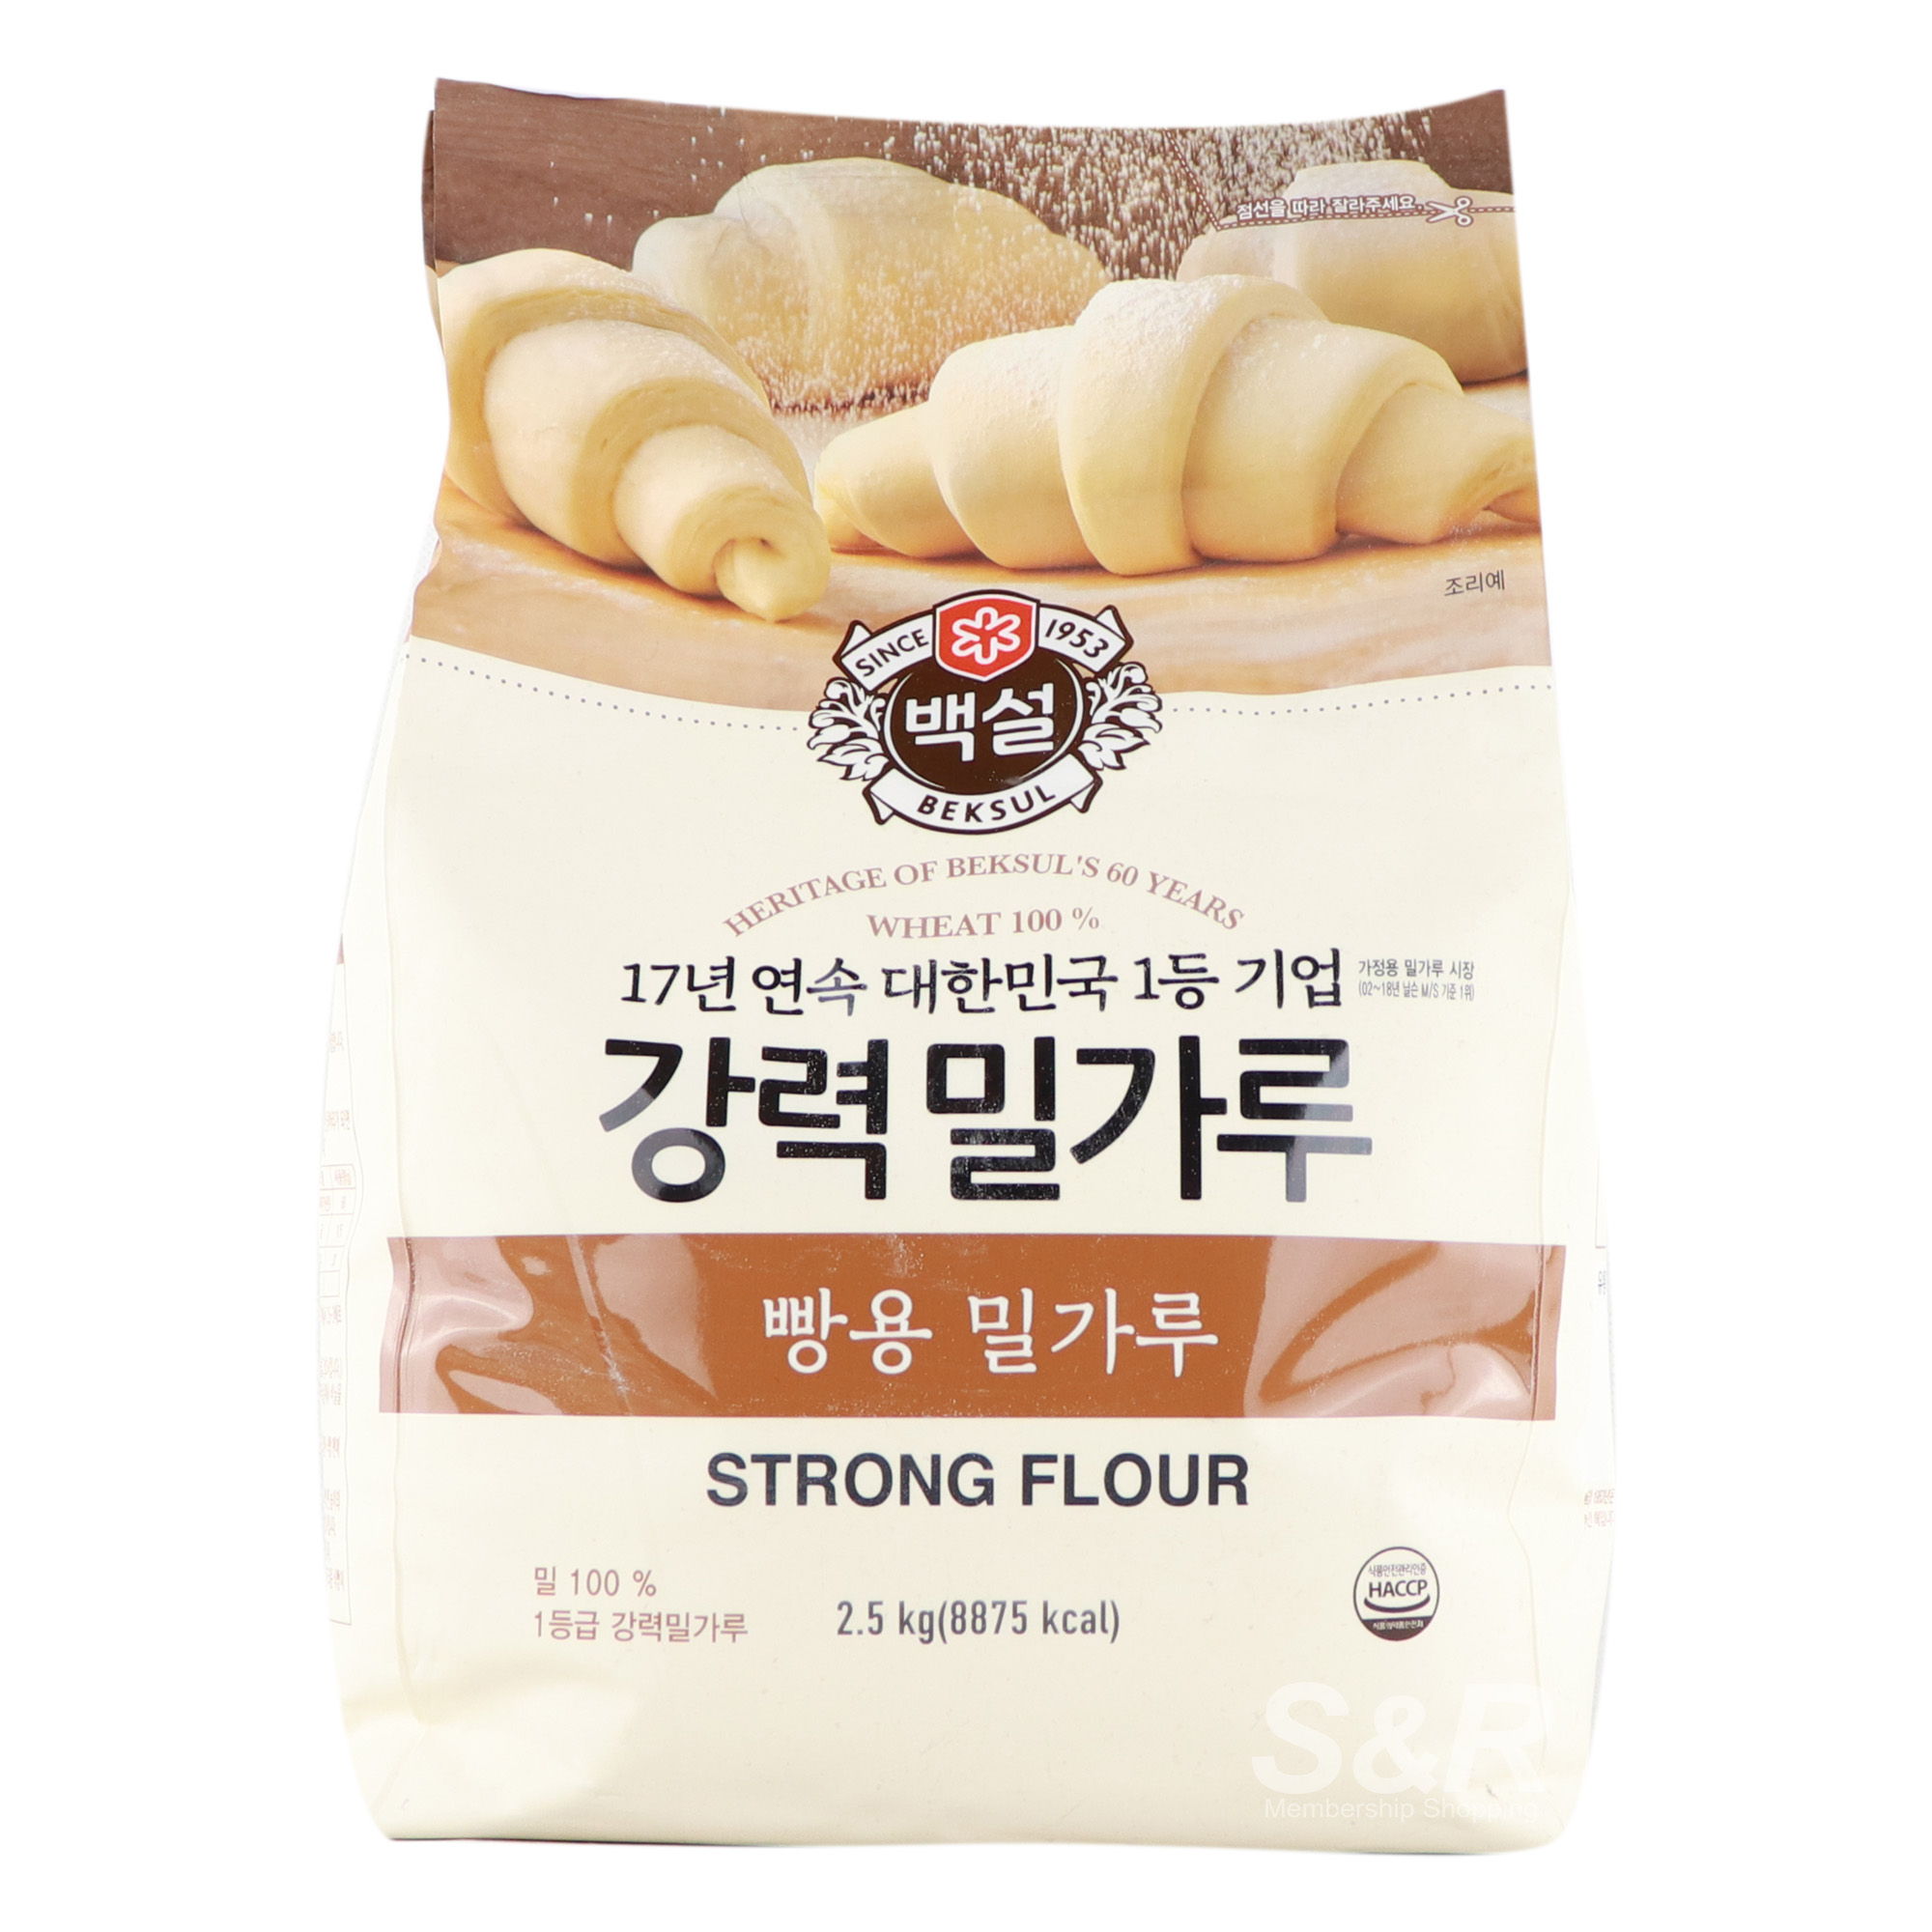 Beksul Wheat 100% Strong Flour 2.5kg